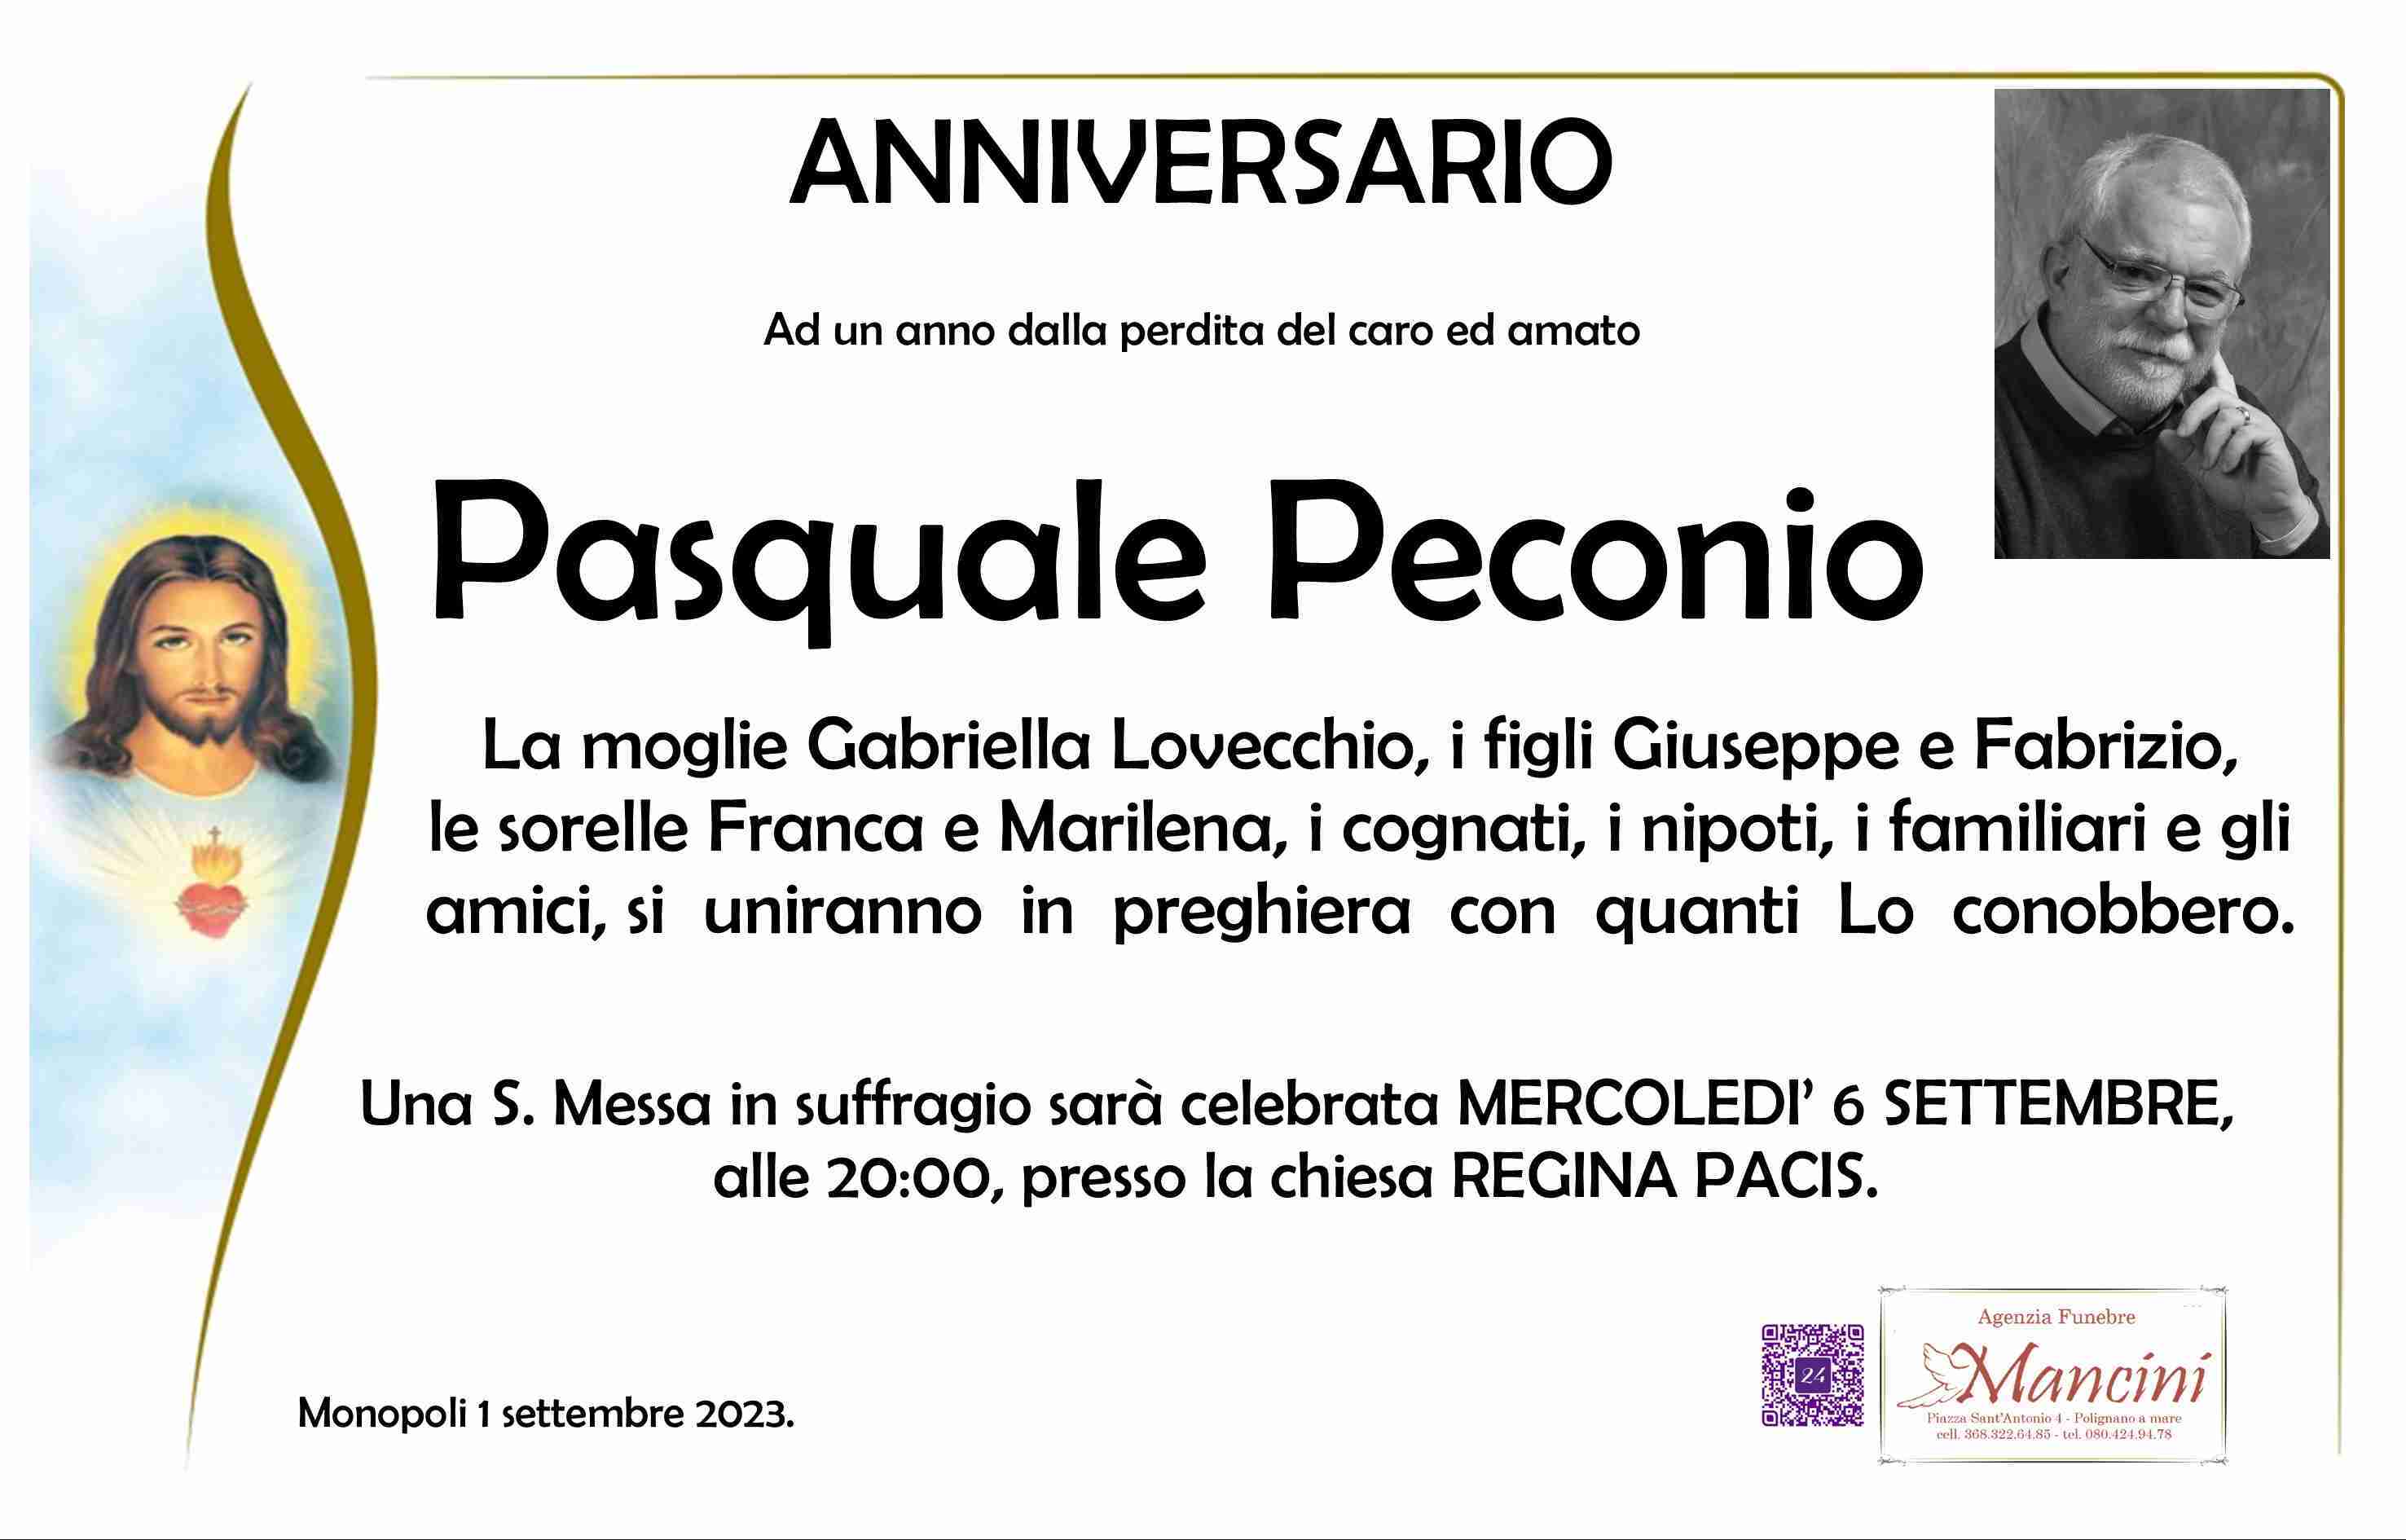 Pasquale Peconio